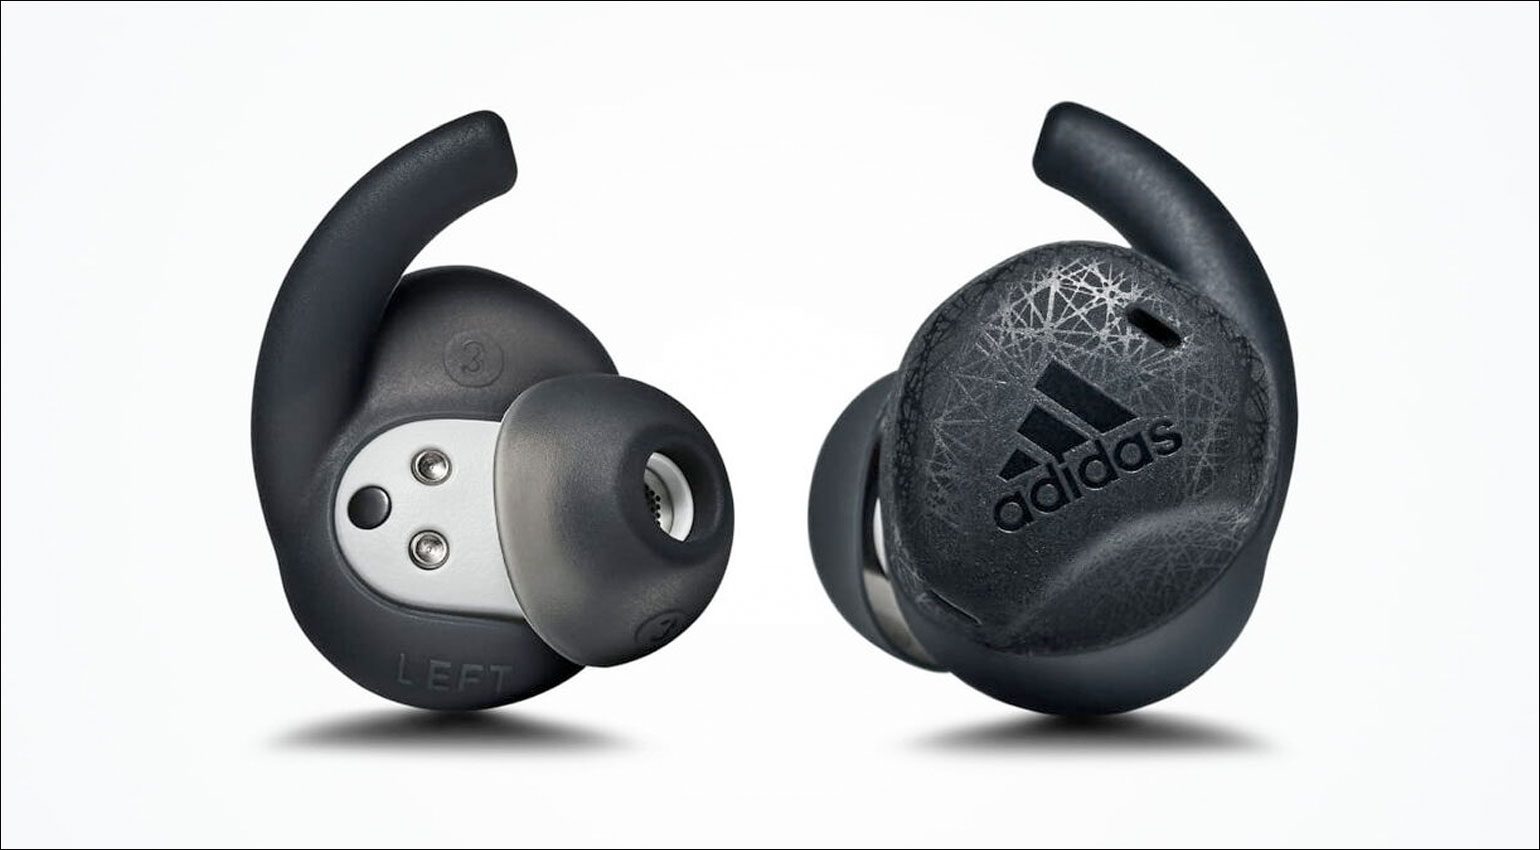 Adidas zeigt neue Earbuds: Z.N.E. 01 ANC, Z.N.E. 01 und FWD-02 